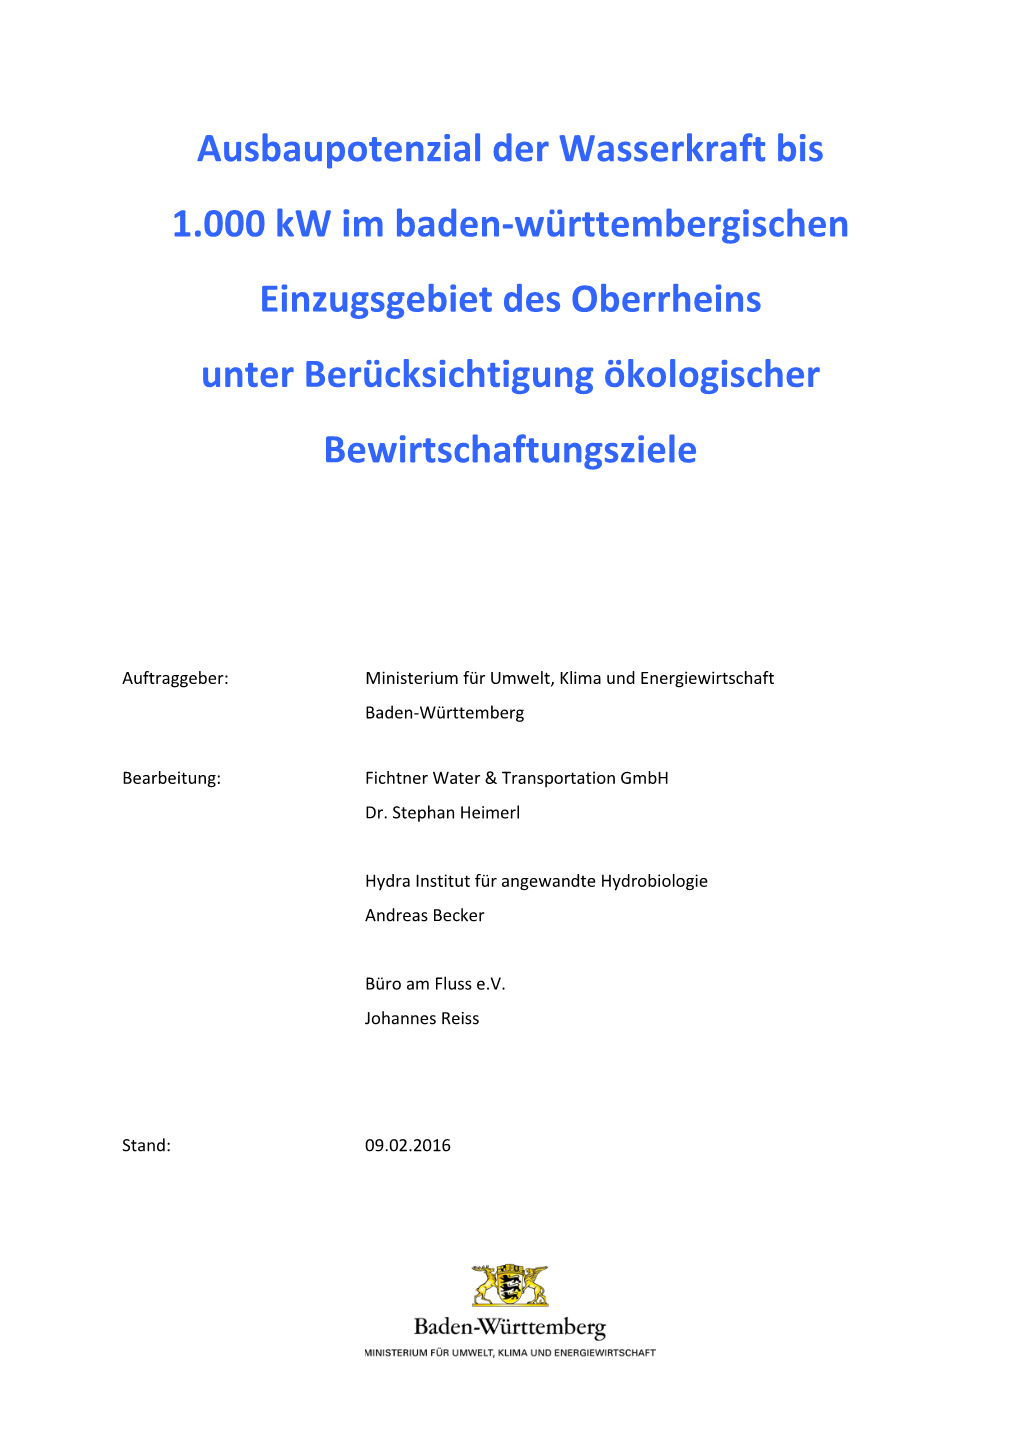 Ausbaupotenzial Der Wasserkraft Bis 1.000 Kw Im Baden-Württembergischen Einzugsgebiet Des Oberrheins Unter Berücksichtigung Ökologischer Bewirtschaftungsziele